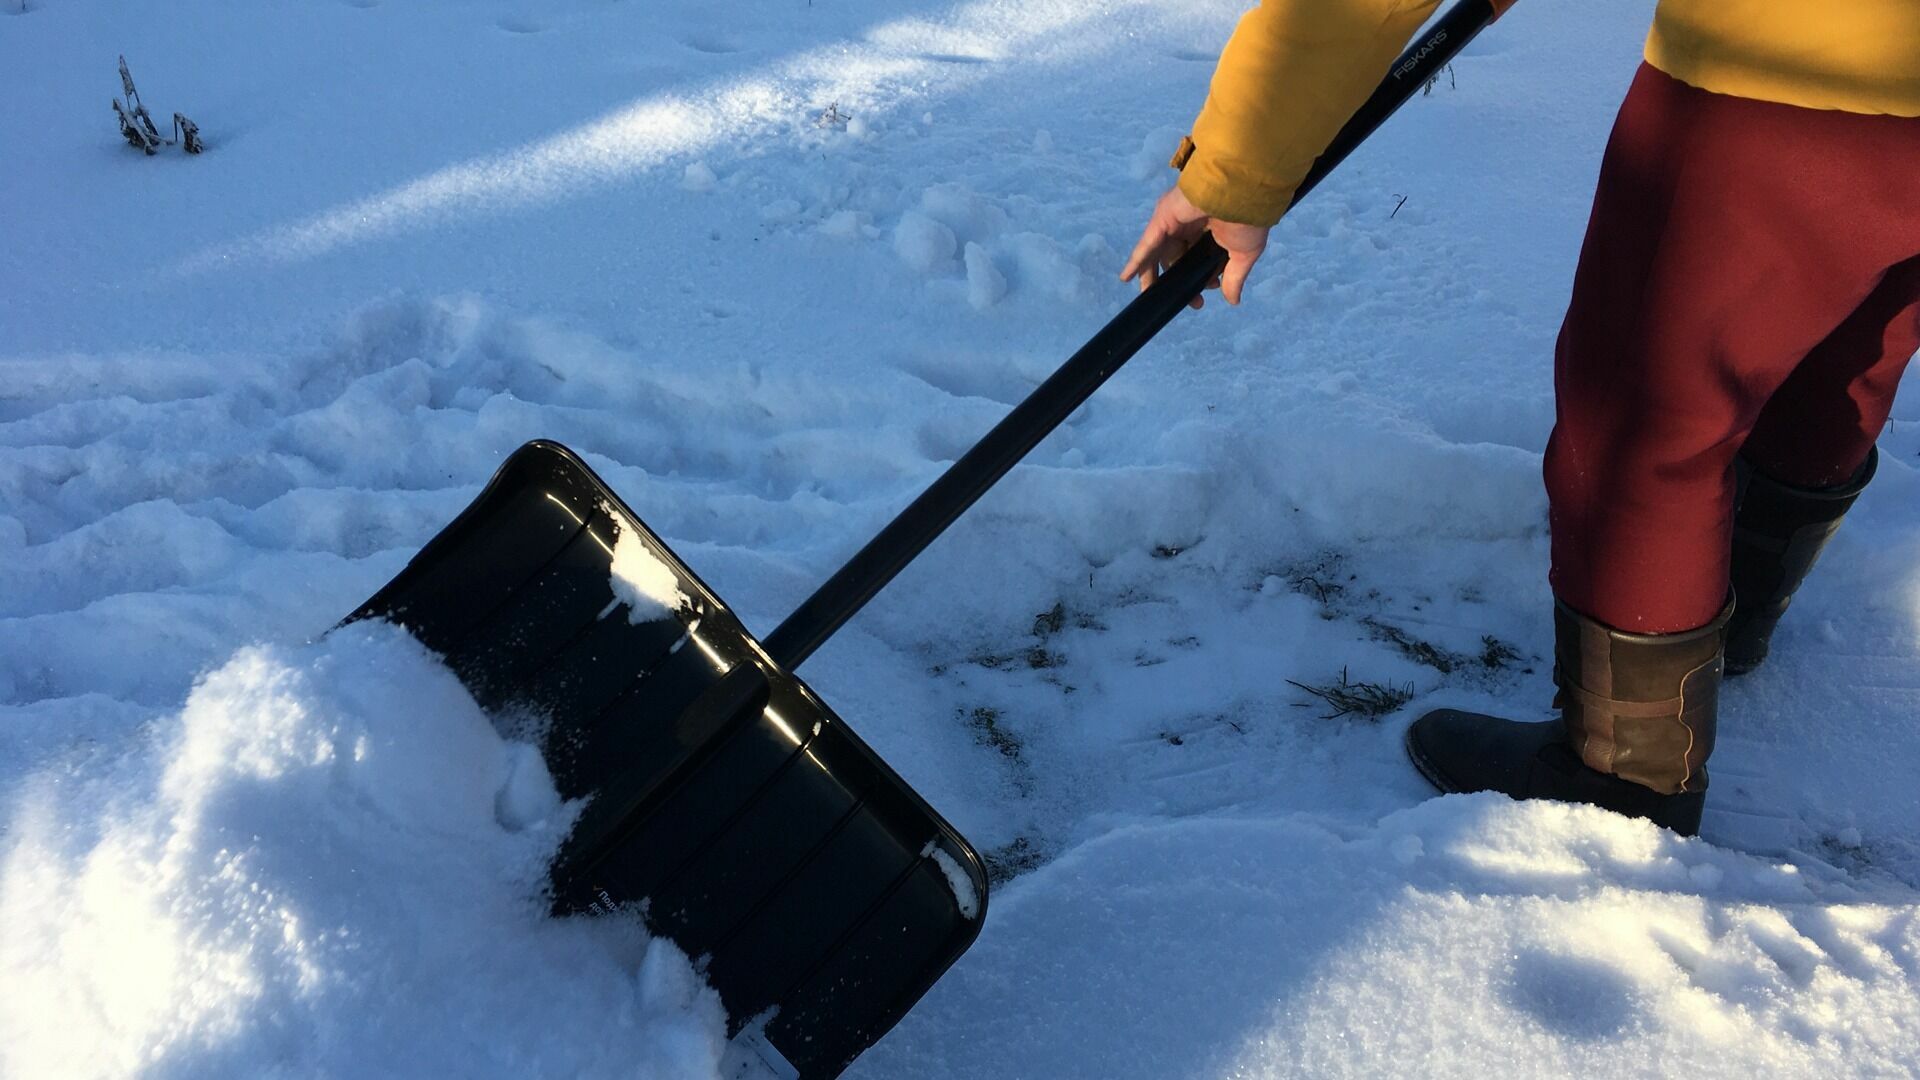 Мэр Челнов об уборке снега: «Кому нужен психолог, возьмите лопату, помогите убраться»